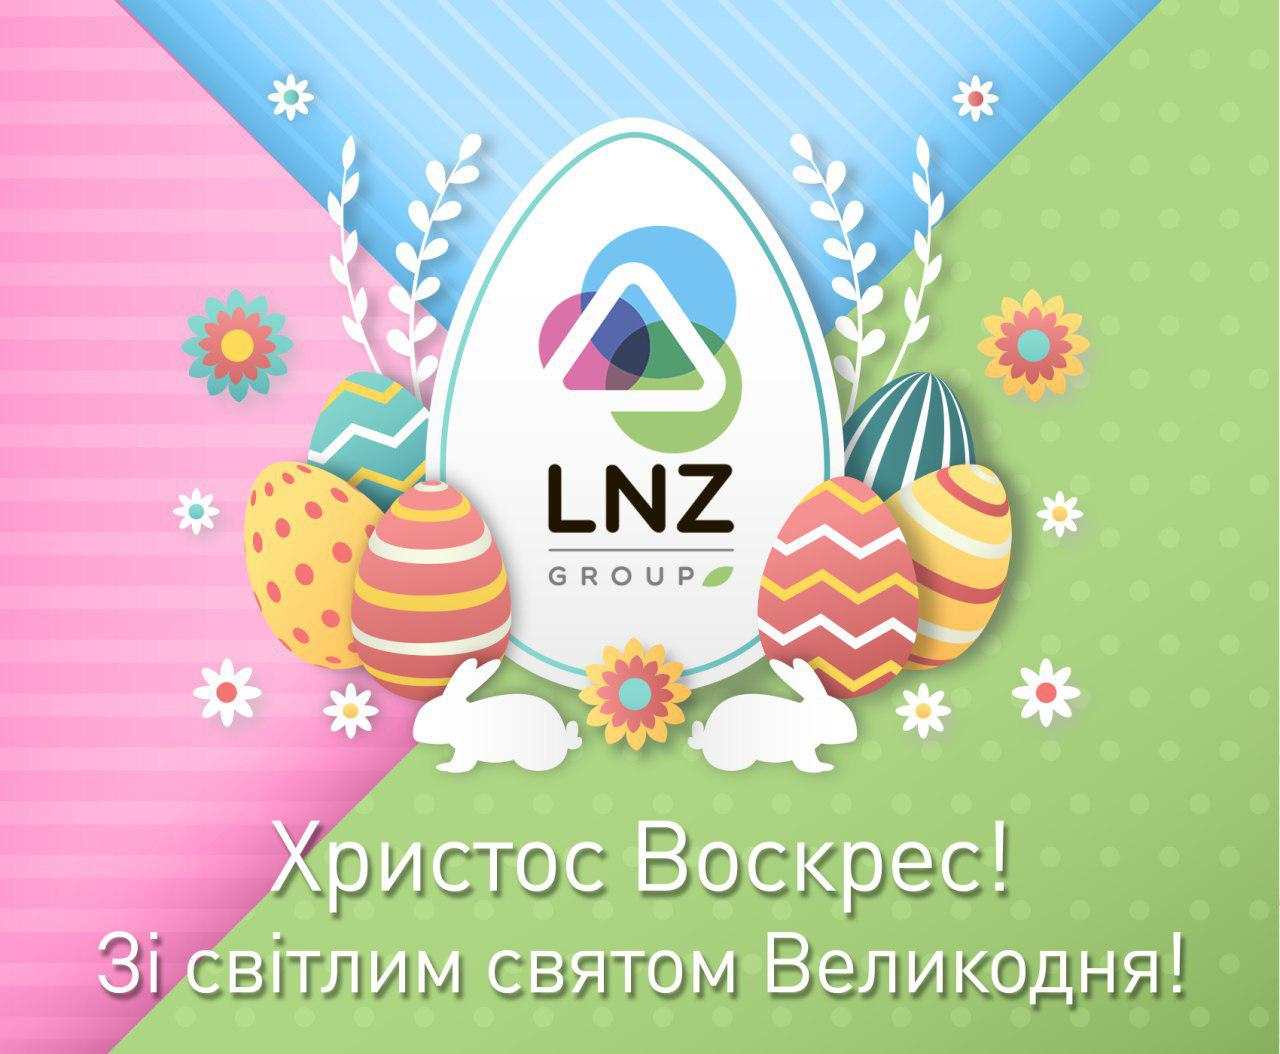 Зі світлим святом Великодня! фото 1 LNZ Group